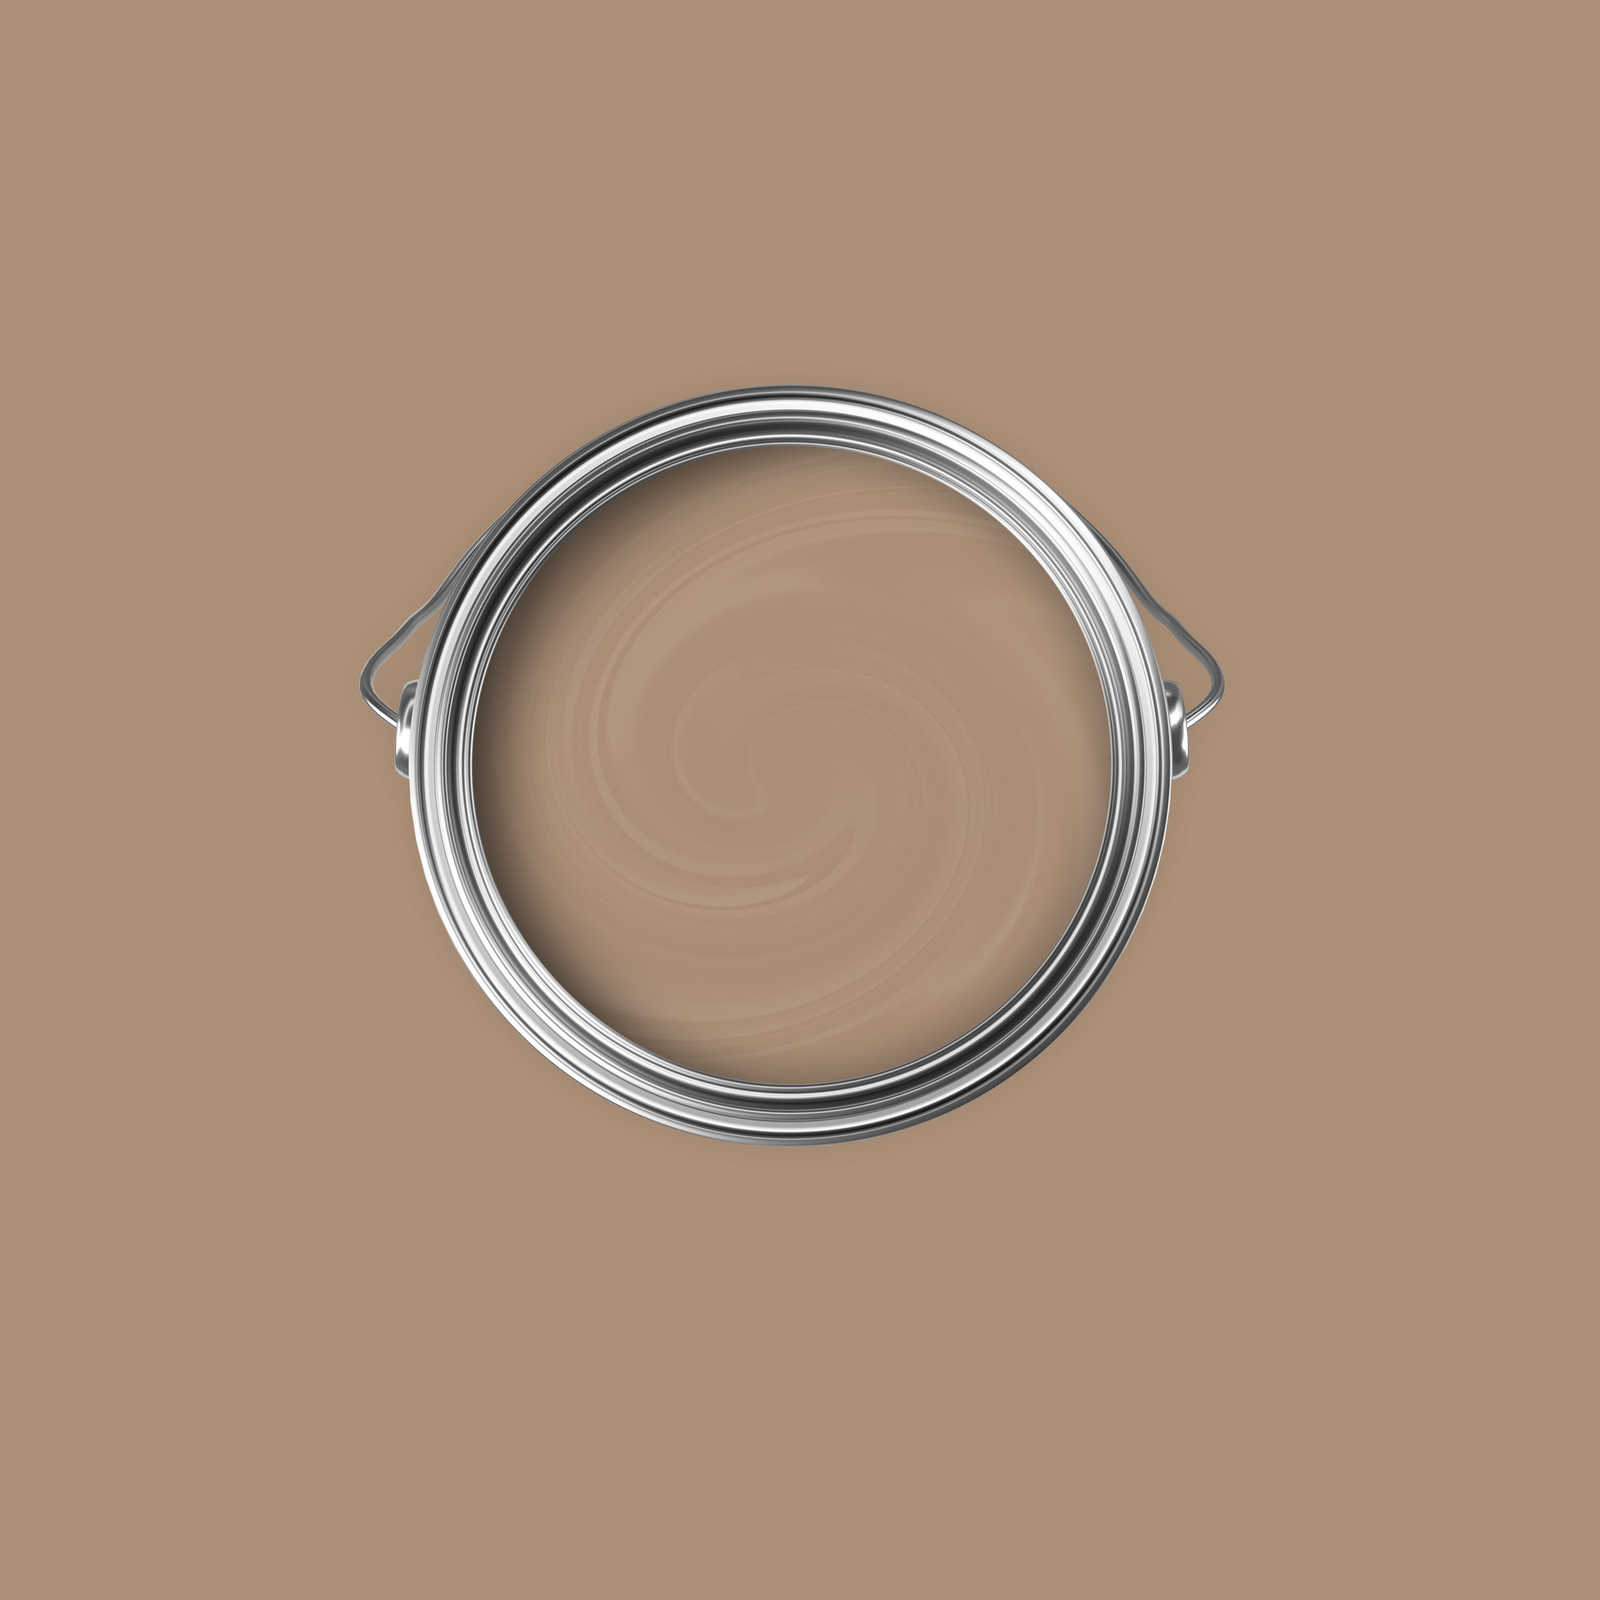             Premium Muurverf Earthy Light Brown »Modern Mud« NW718 – 2,5 Liter
        